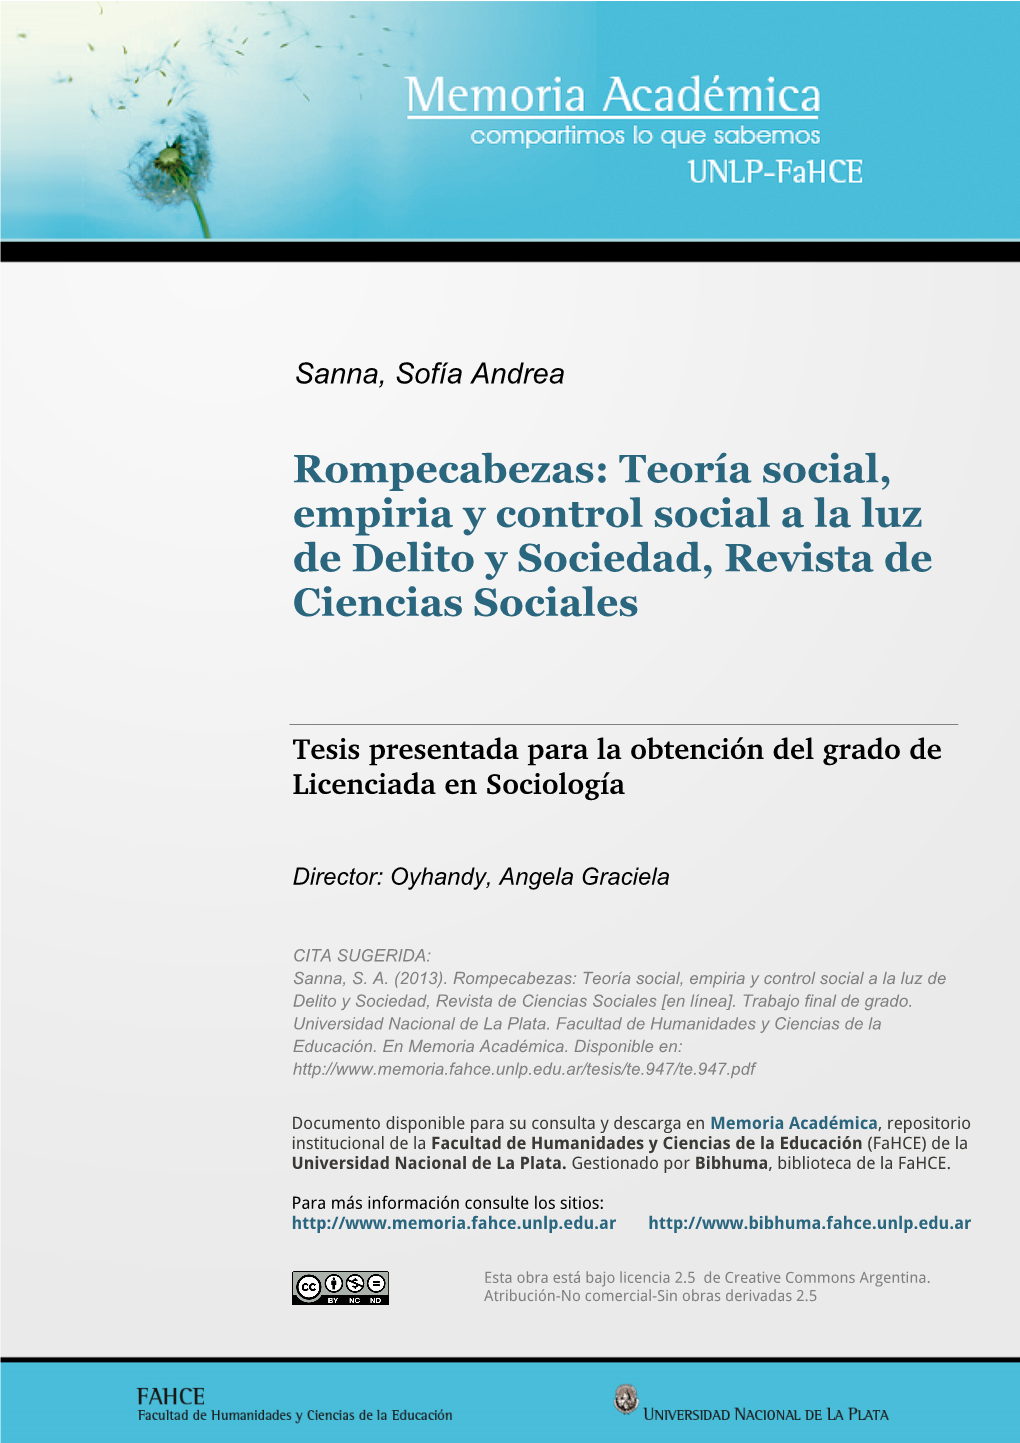 Teoría Social, Empiria Y Control Social a La Luz De Delito Y Sociedad, Revista De Ciencias Sociales